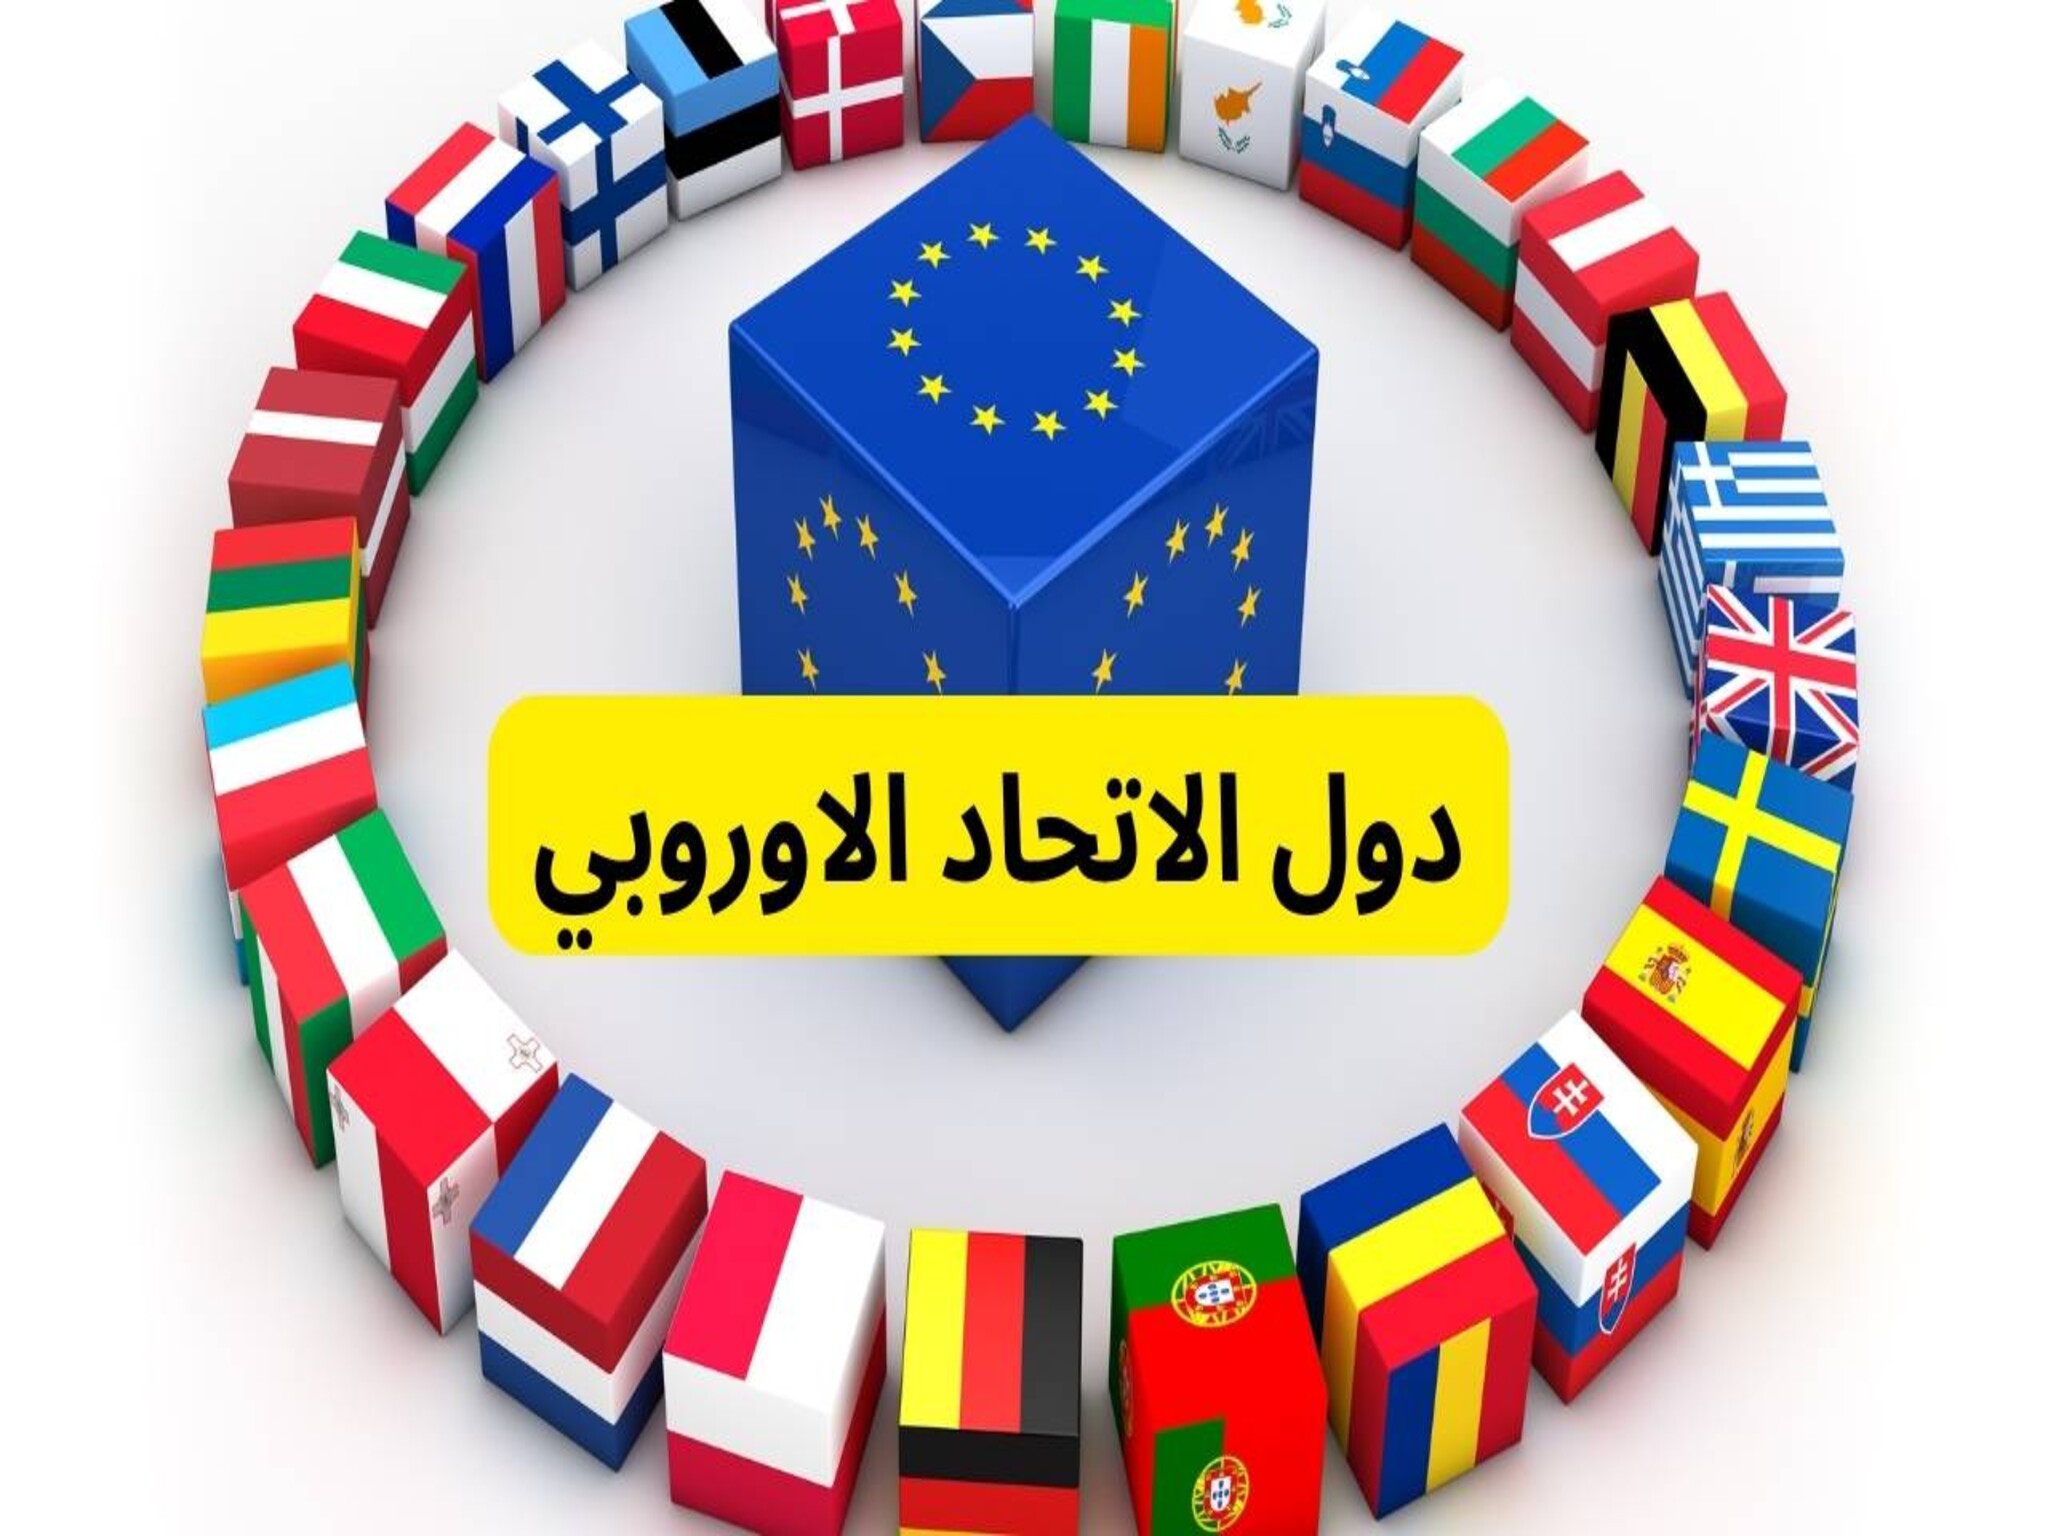 الاتحاد الأوروبي... إعطاء الضوء الأخضر لتقديم المساعدات المالية للفلسطينيين بغزة